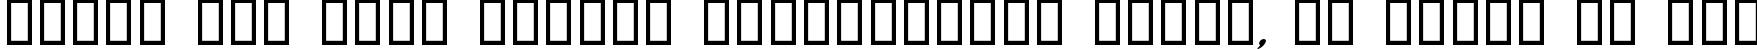 Пример написания шрифтом Jerusalem Italic текста на русском